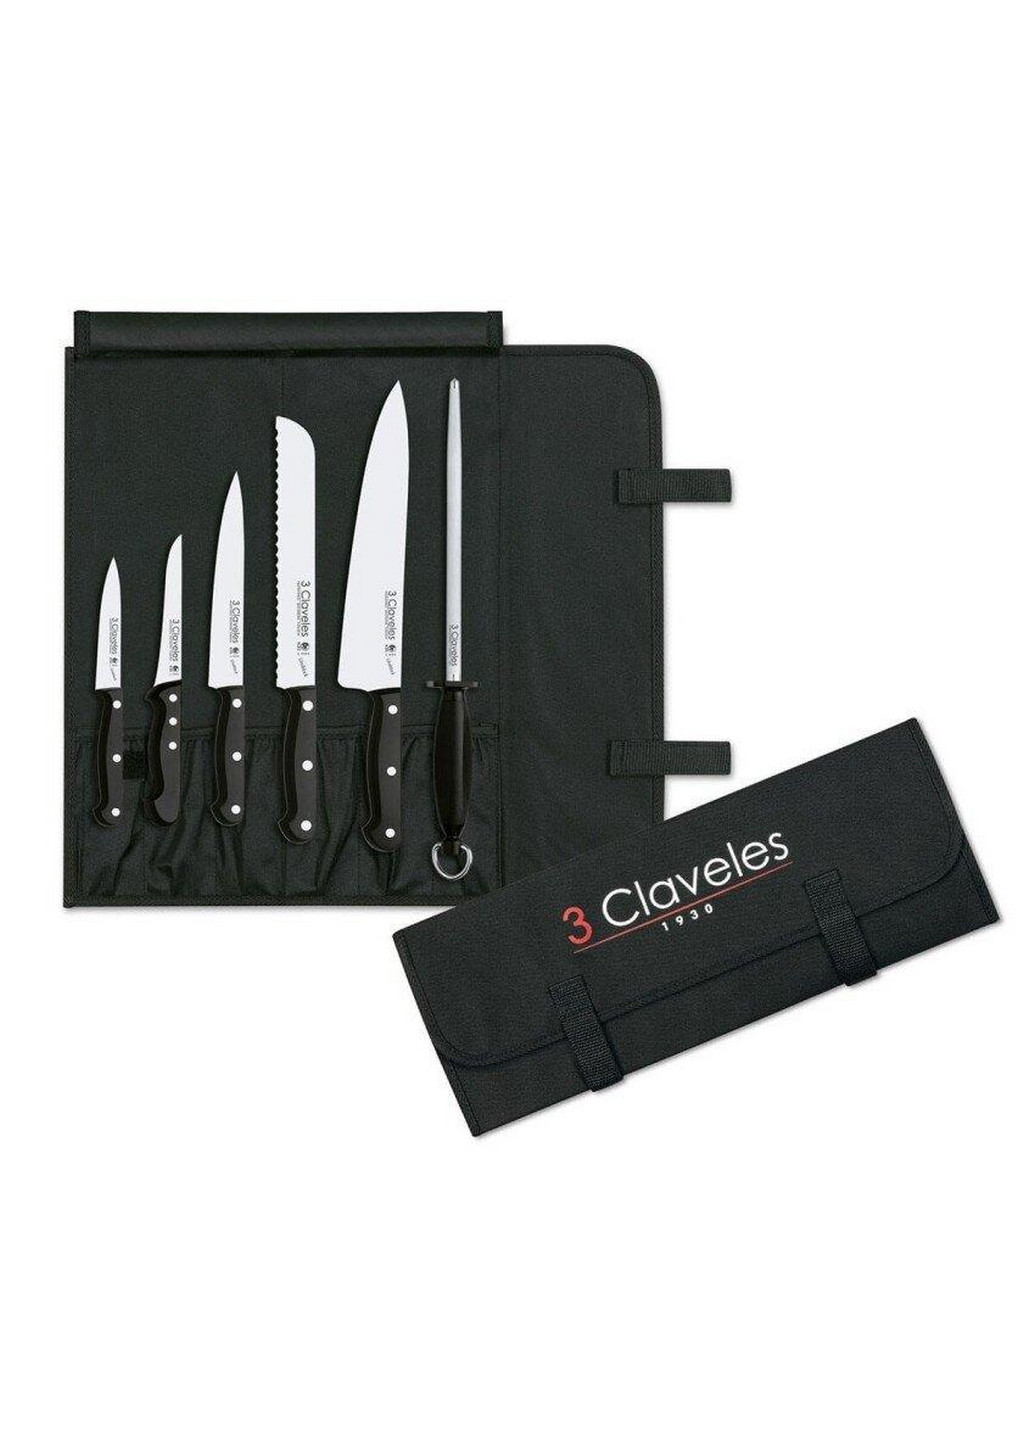 Набор ножей из 6-ти предметов Uniblock 3 Claveles чёрные,